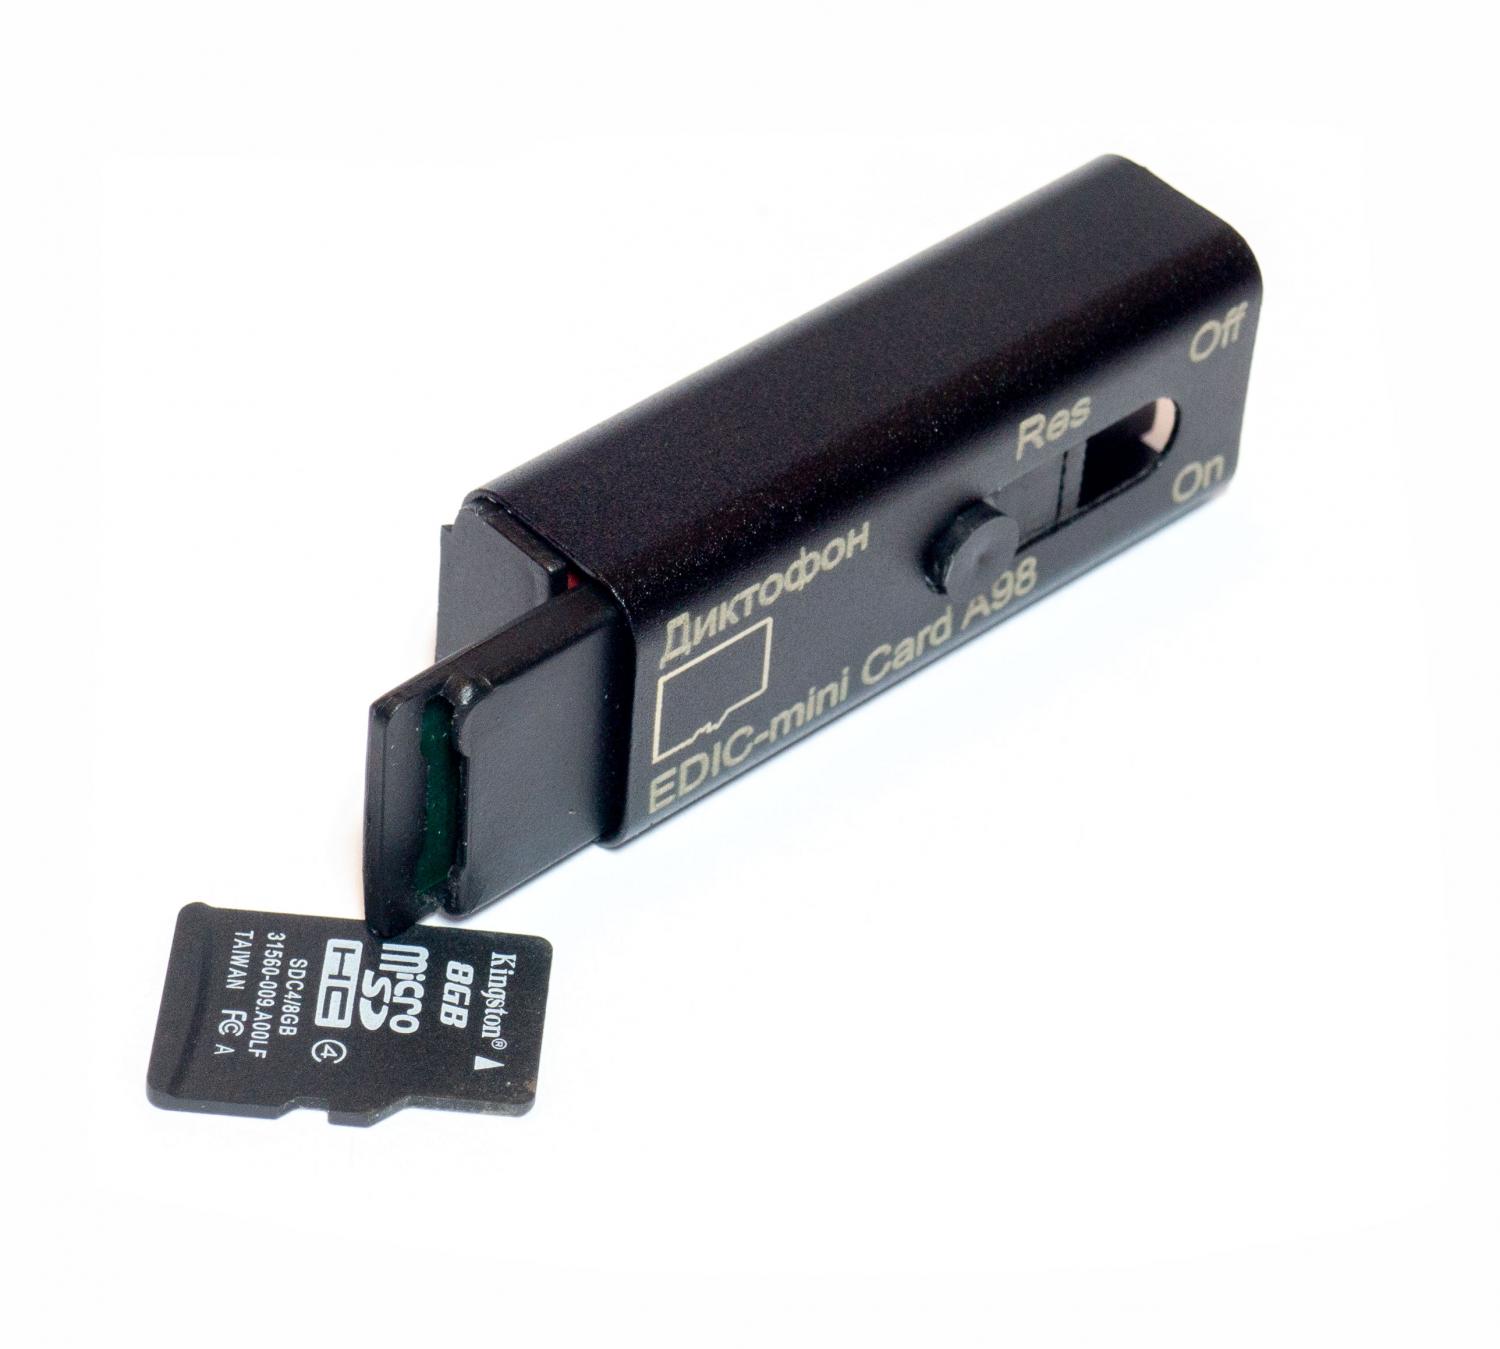 Все Телесистемы EM Card А98 (металл, размер 11*15*37мм, вес 7г, автономность до 35ч, аккумулятор) видеонаблюдения в магазине Vidos Group